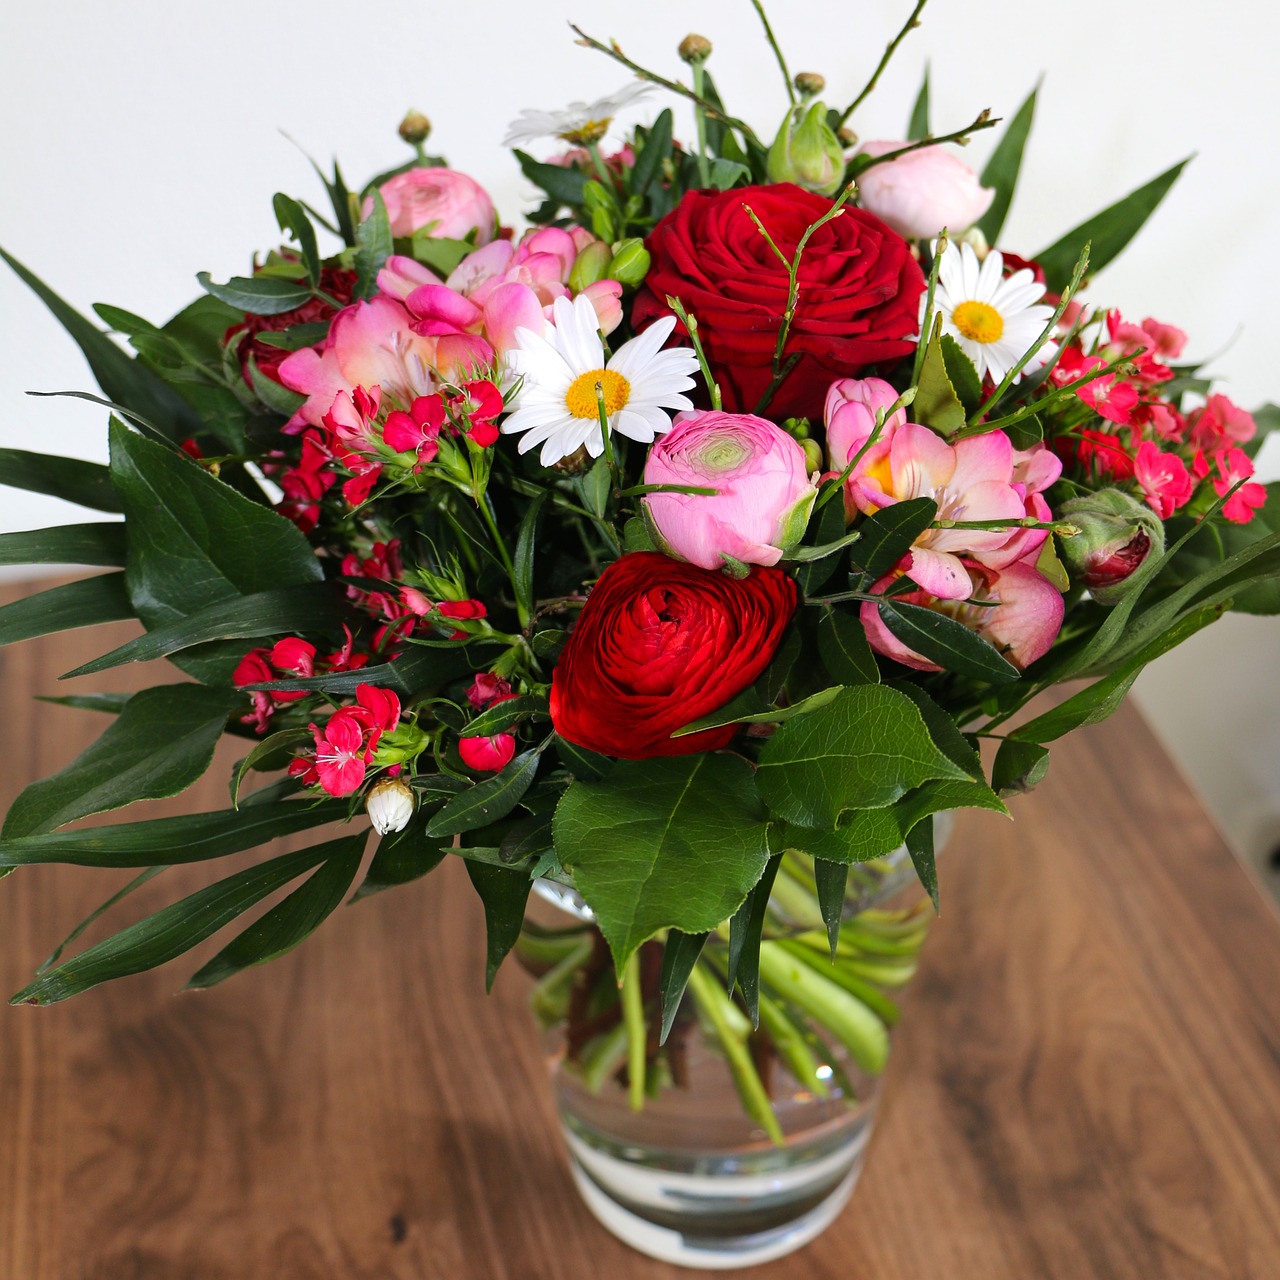 Extra verwerken Telemacos Bloemen bestellen en bloemen bezorgen: vergelijk bloemisten